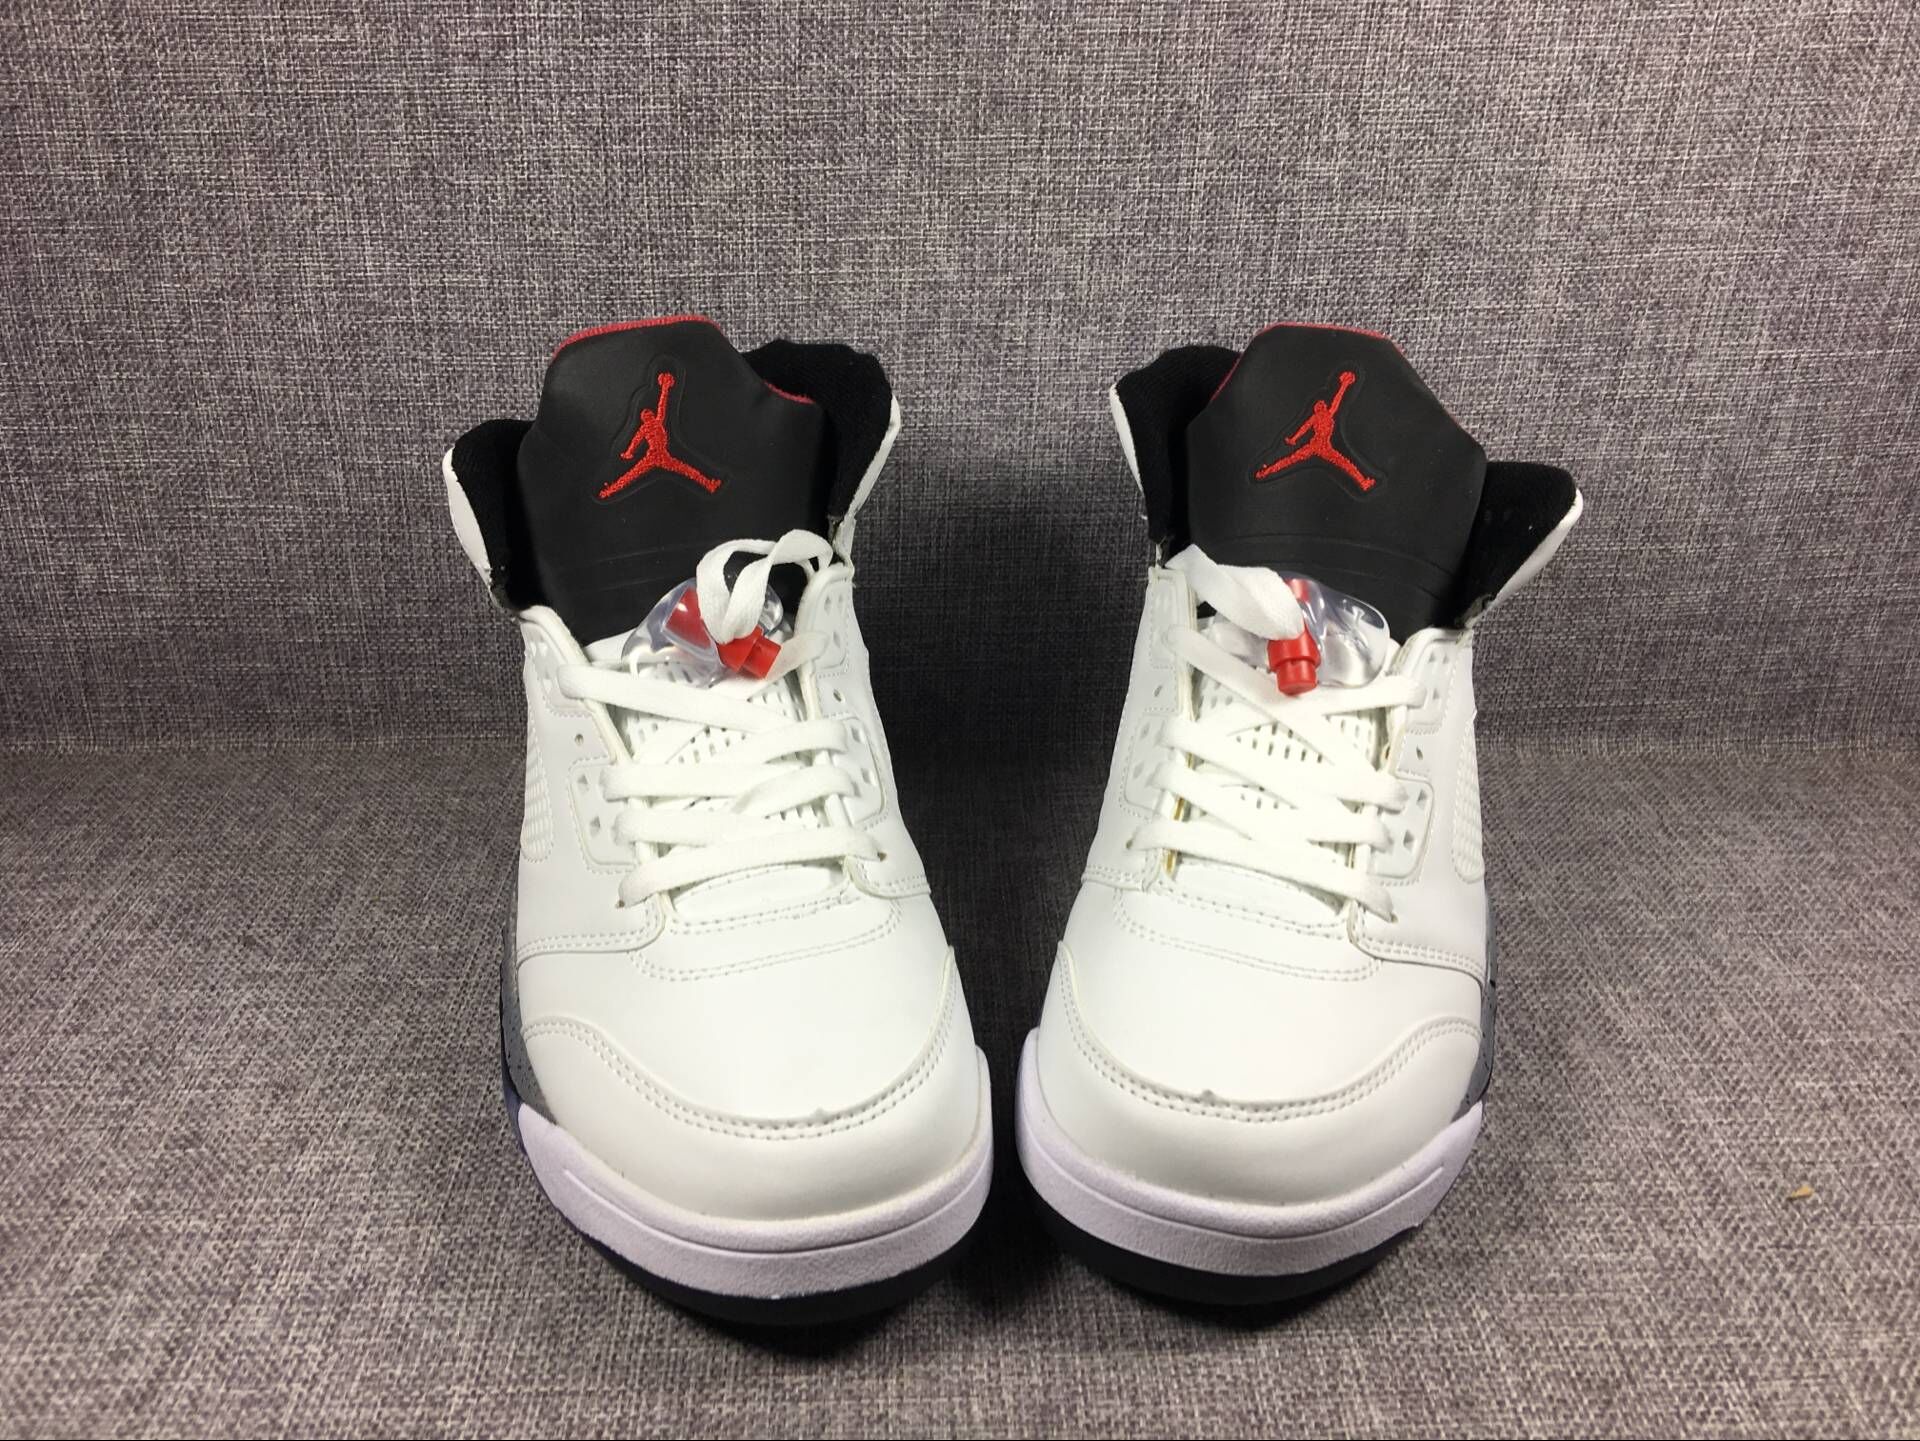 New Jordans 5 White Cement Shoes